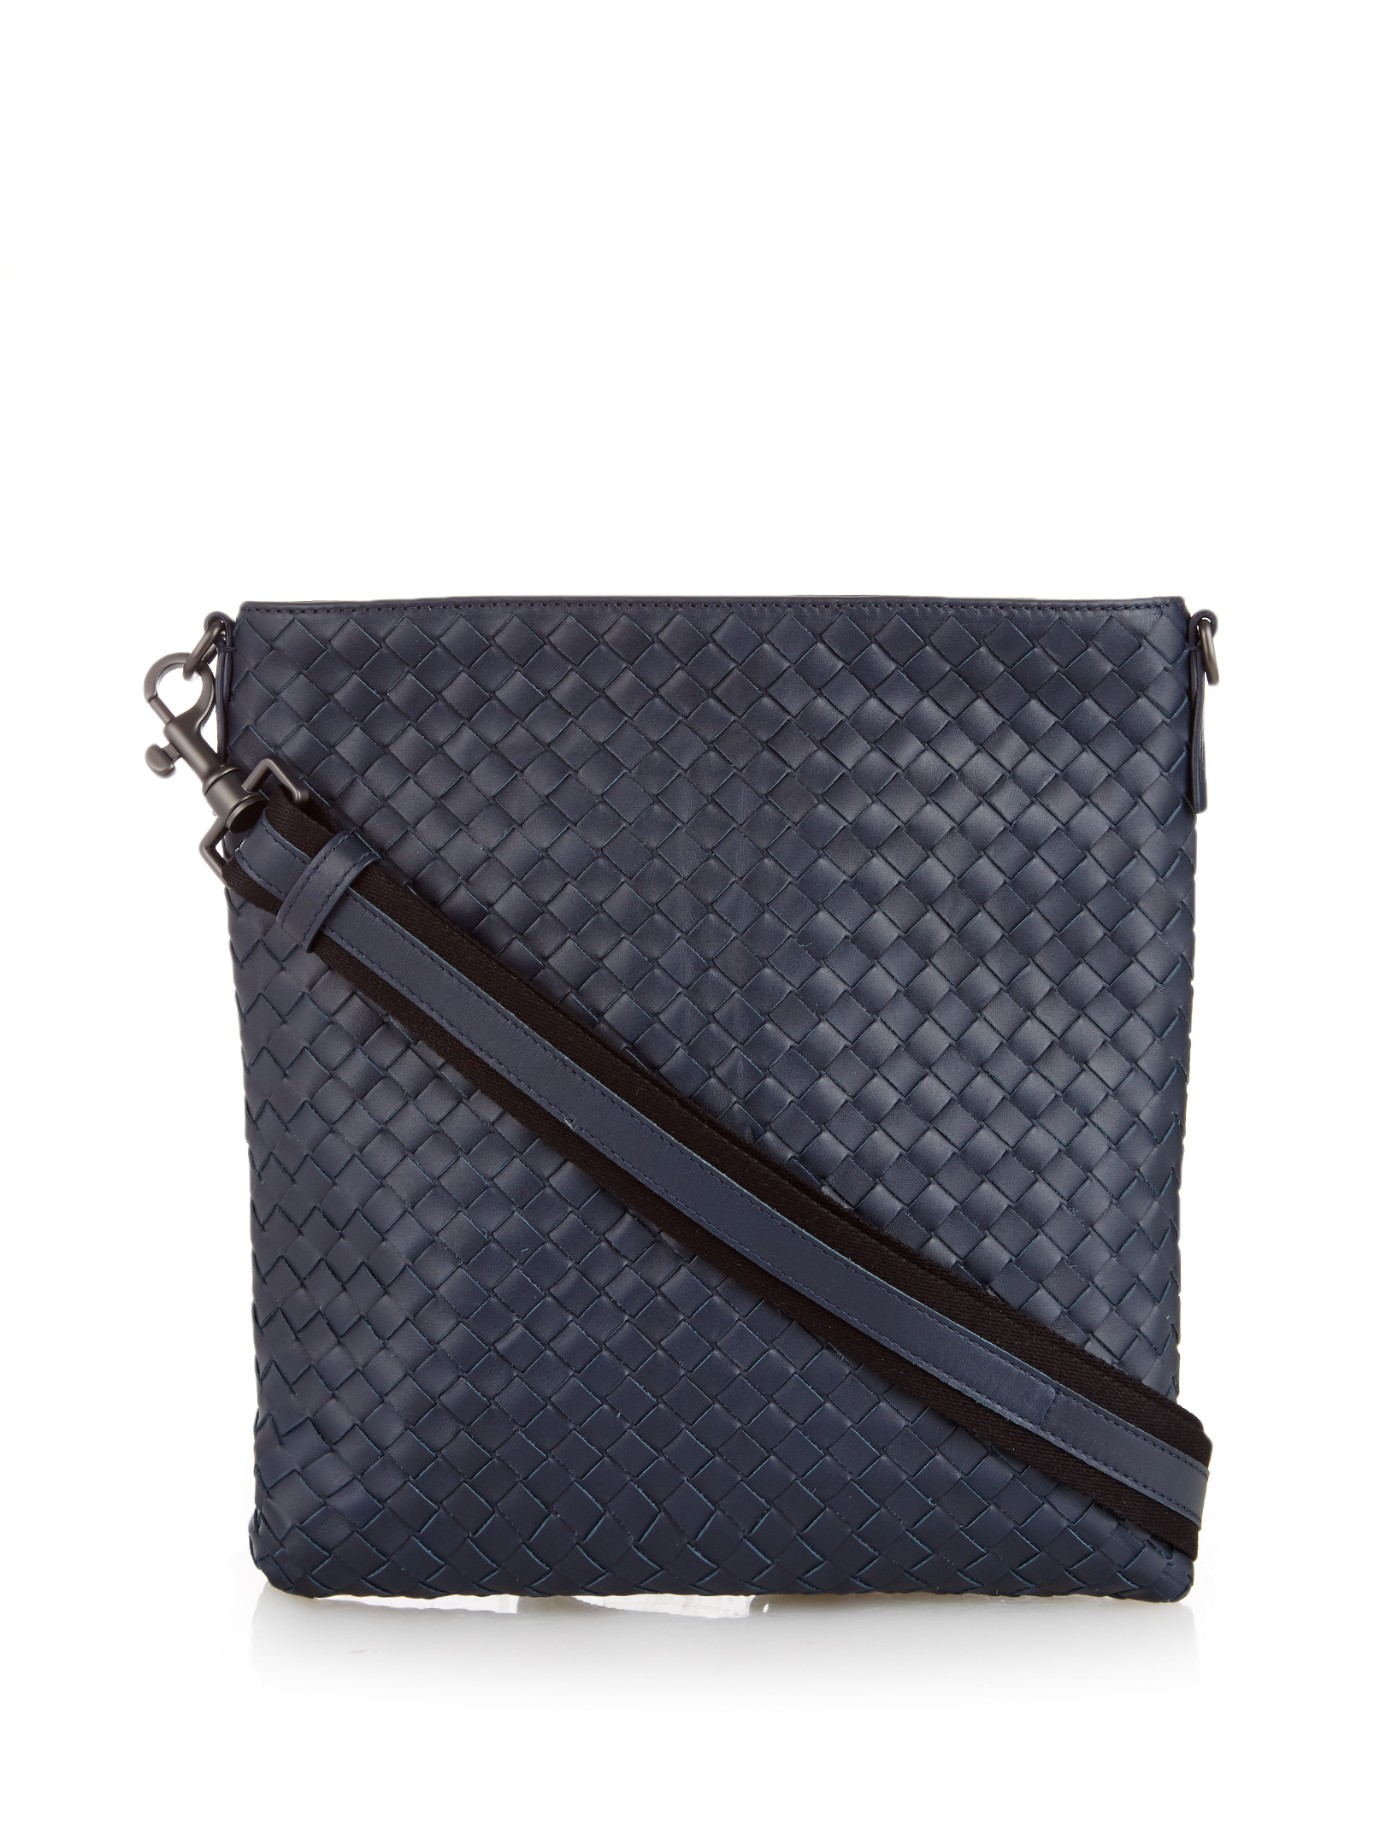 Lyst - Bottega veneta Intrecciato Leather Messenger Bag in Blue for Men